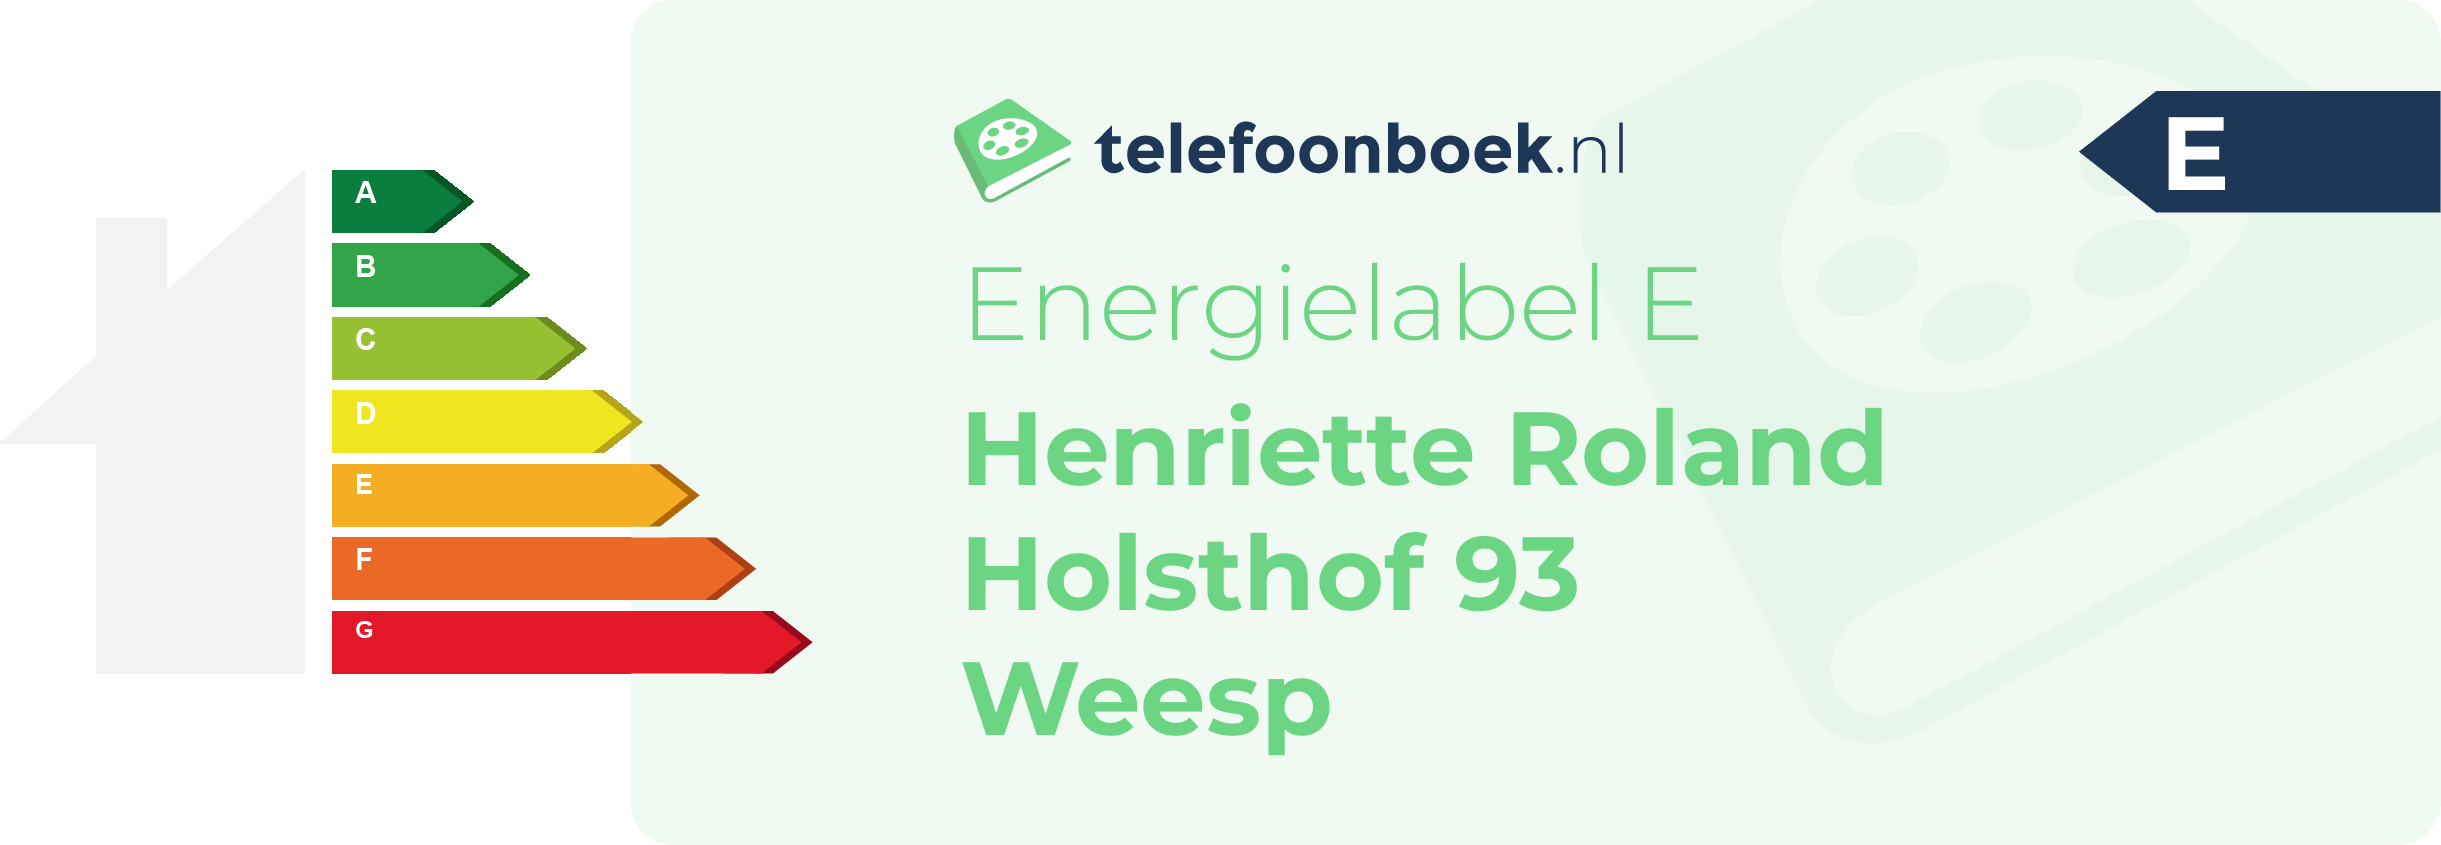 Energielabel Henriette Roland Holsthof 93 Weesp